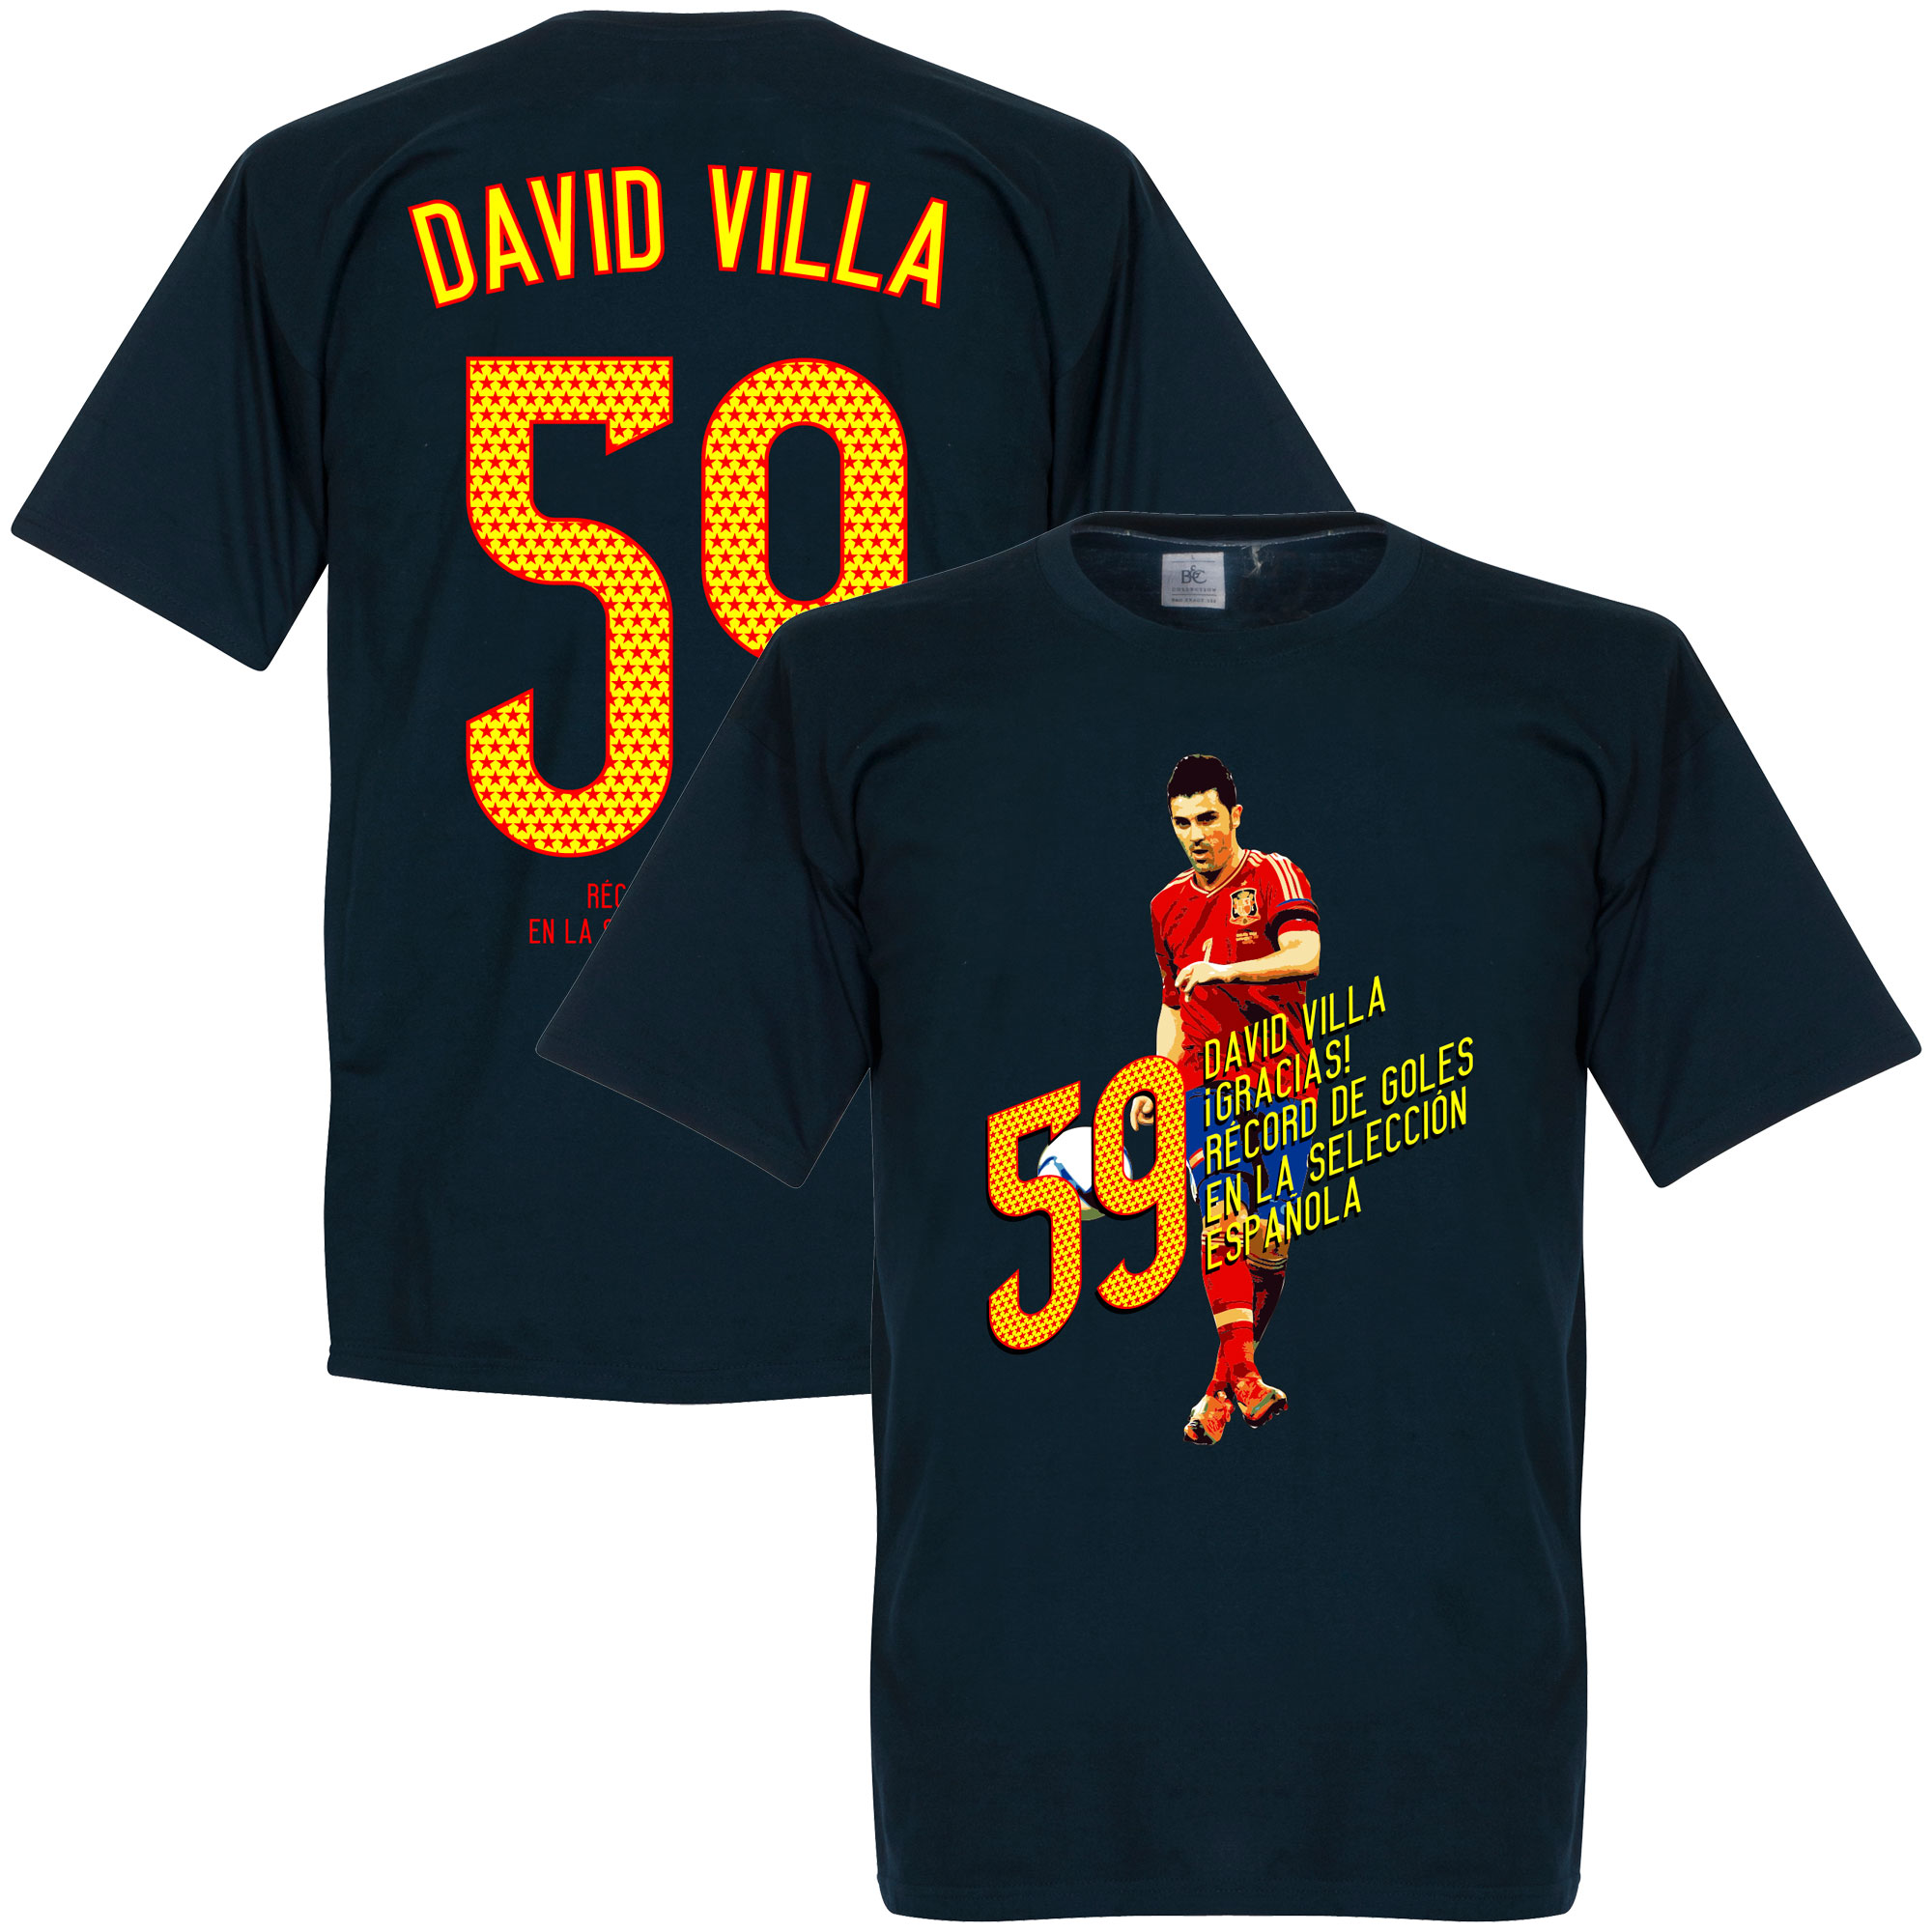 David Villa 59 Goals T-Shirt S